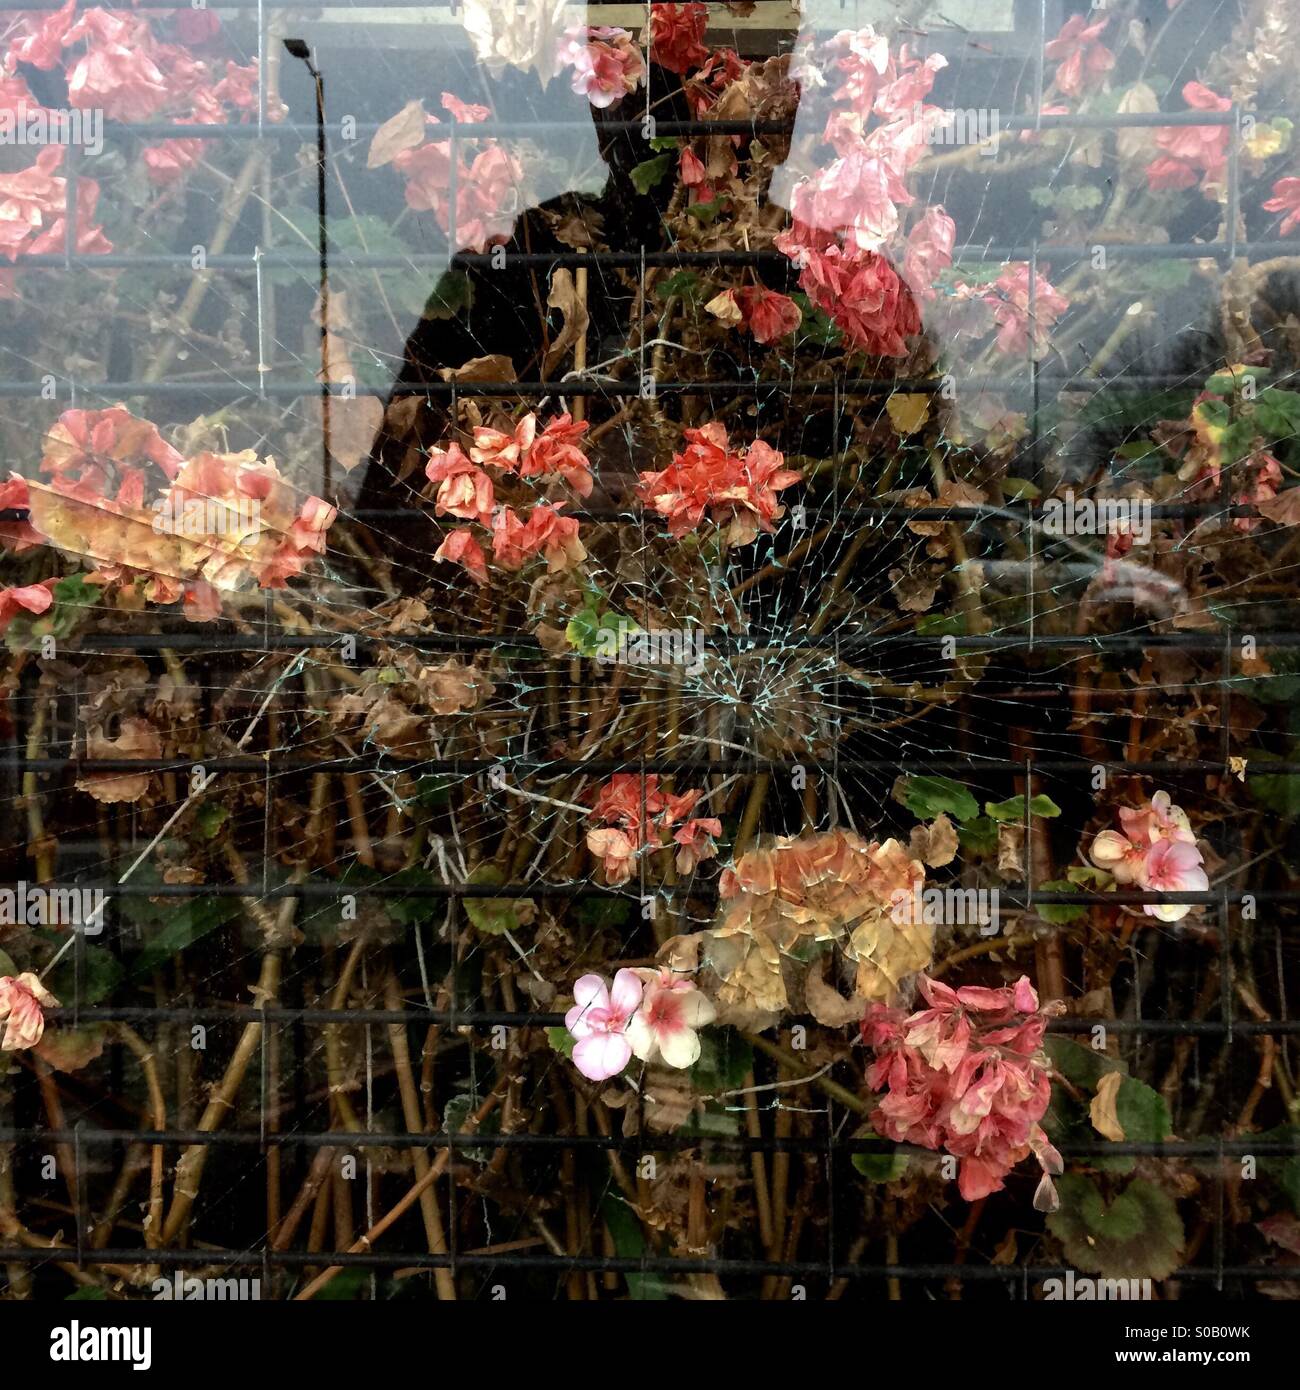 Une figure se reflète dans la fenêtre brisée d'un vers le bas à un fleuriste à Birmingham, Angleterre, Royaume-Uni. Banque D'Images